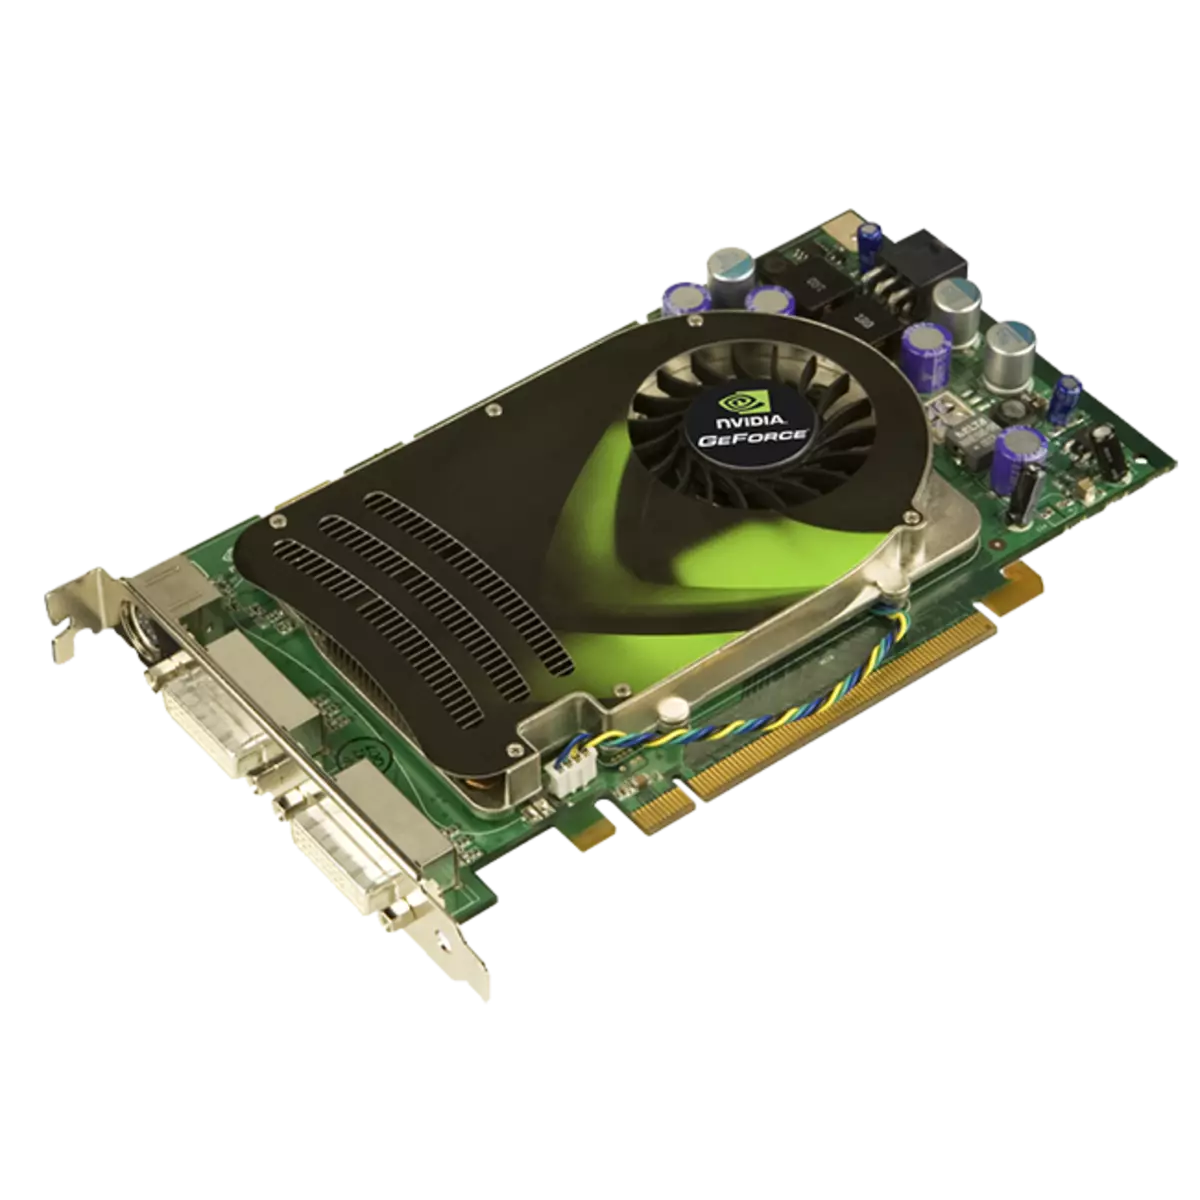 Downloadsjauffeurs foar Nvidia GeForce 8600 GT